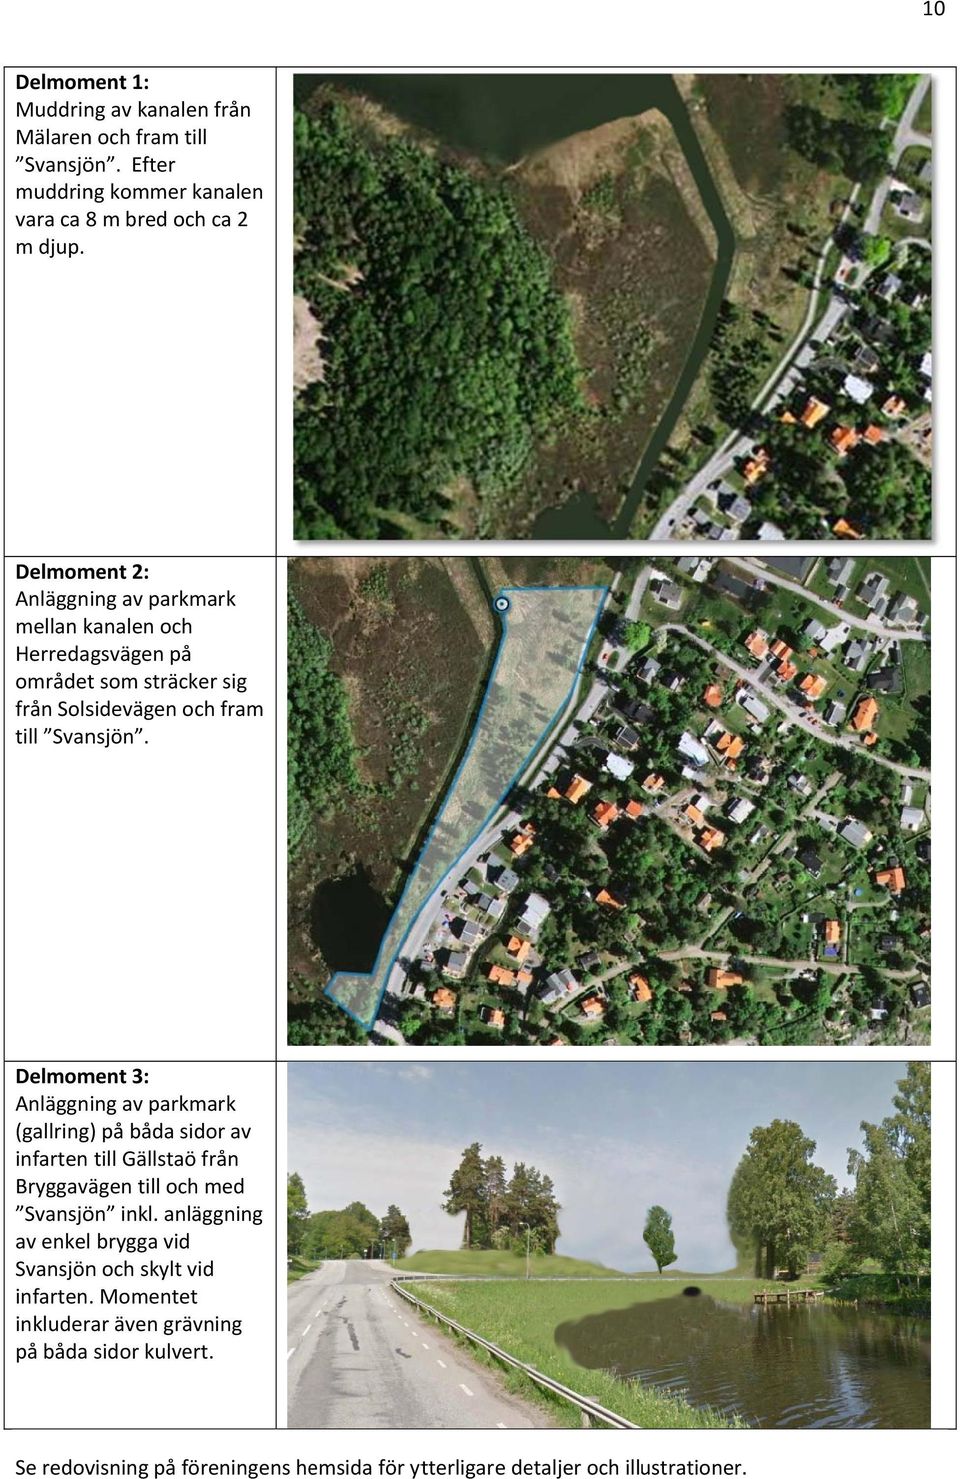 Delmoment 3: Anläggning av parkmark (gallring) på båda sidor av infarten till Gällstaö från Bryggavägen till och med Svansjön inkl.